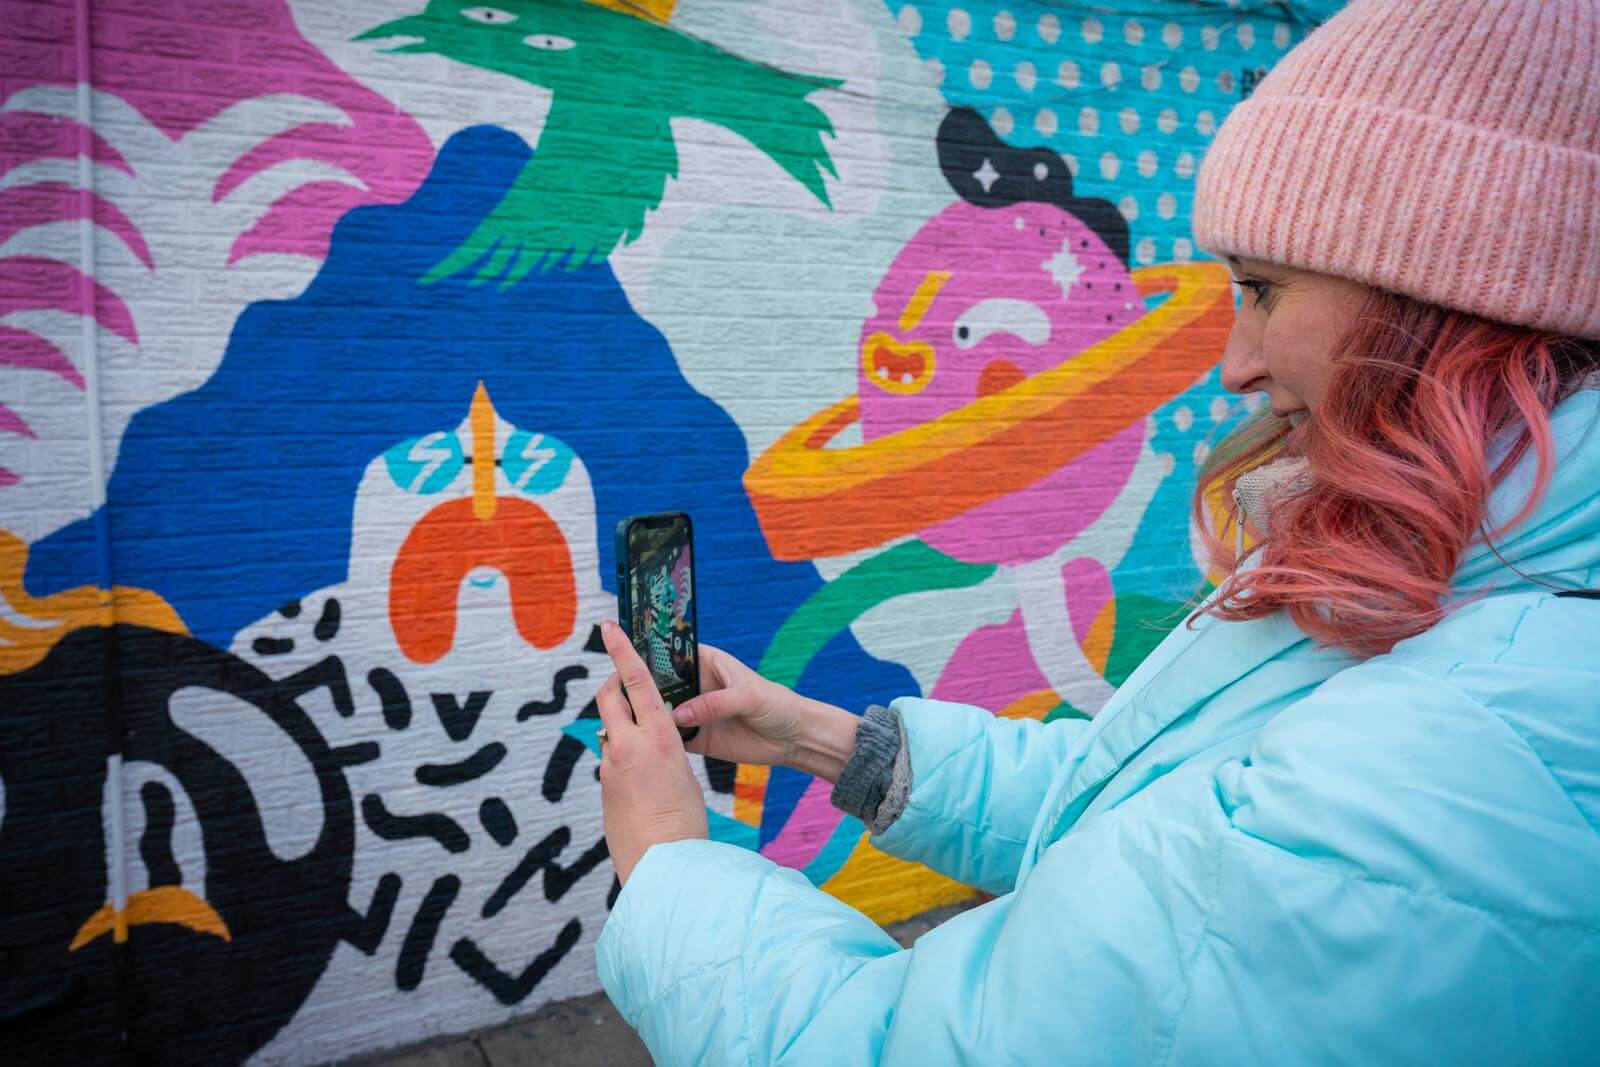 Street art hunt in Williamsburg Brooklyn